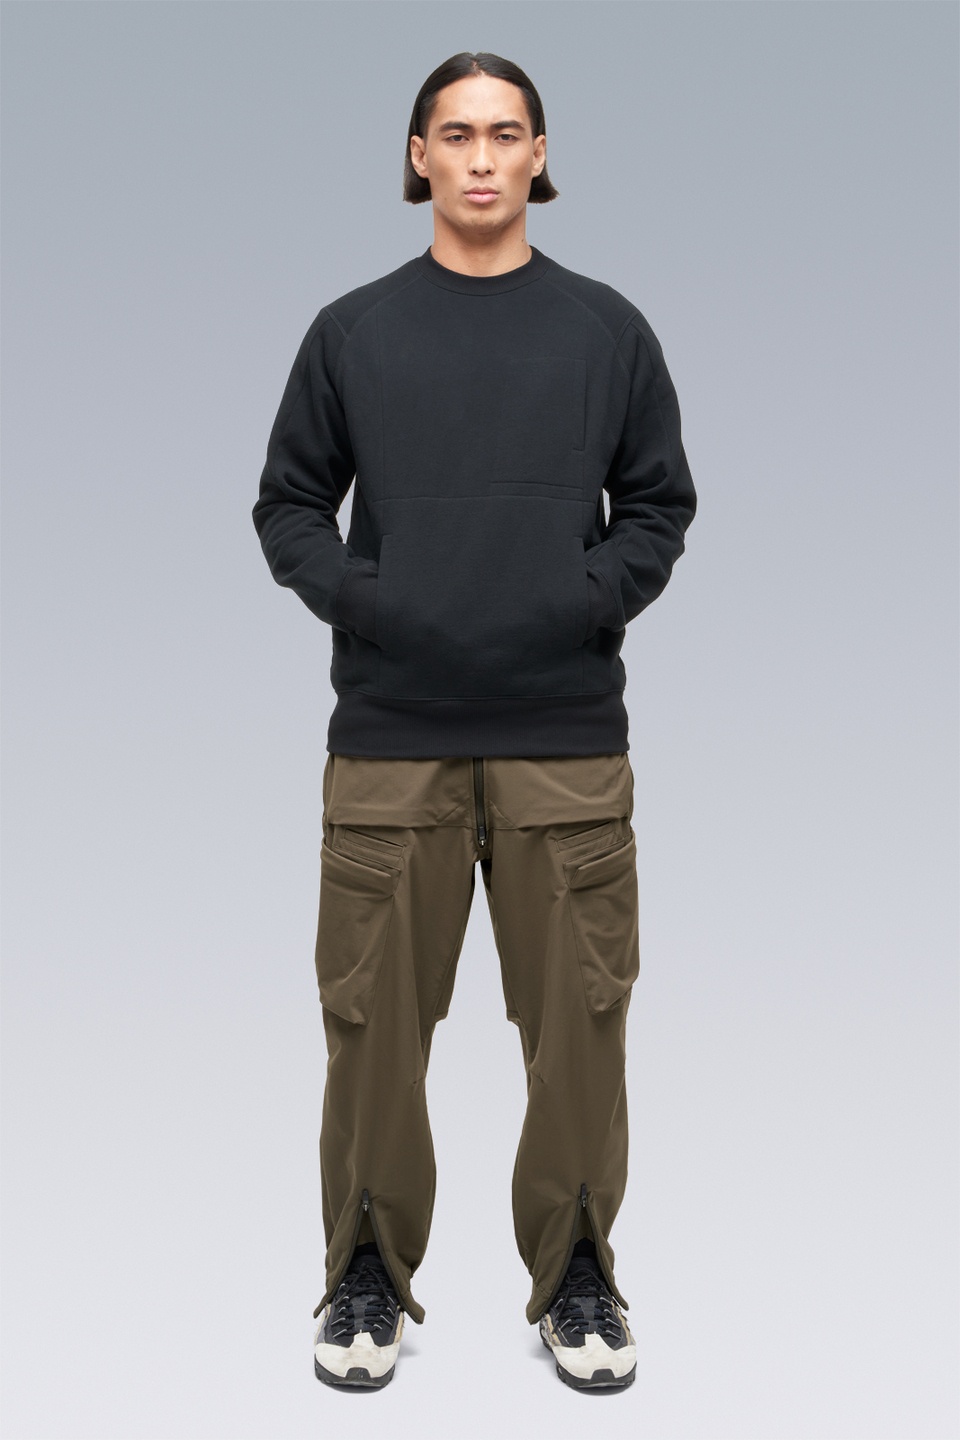 S14-BR Cotton Crewneck Sweatshirt Black - 5